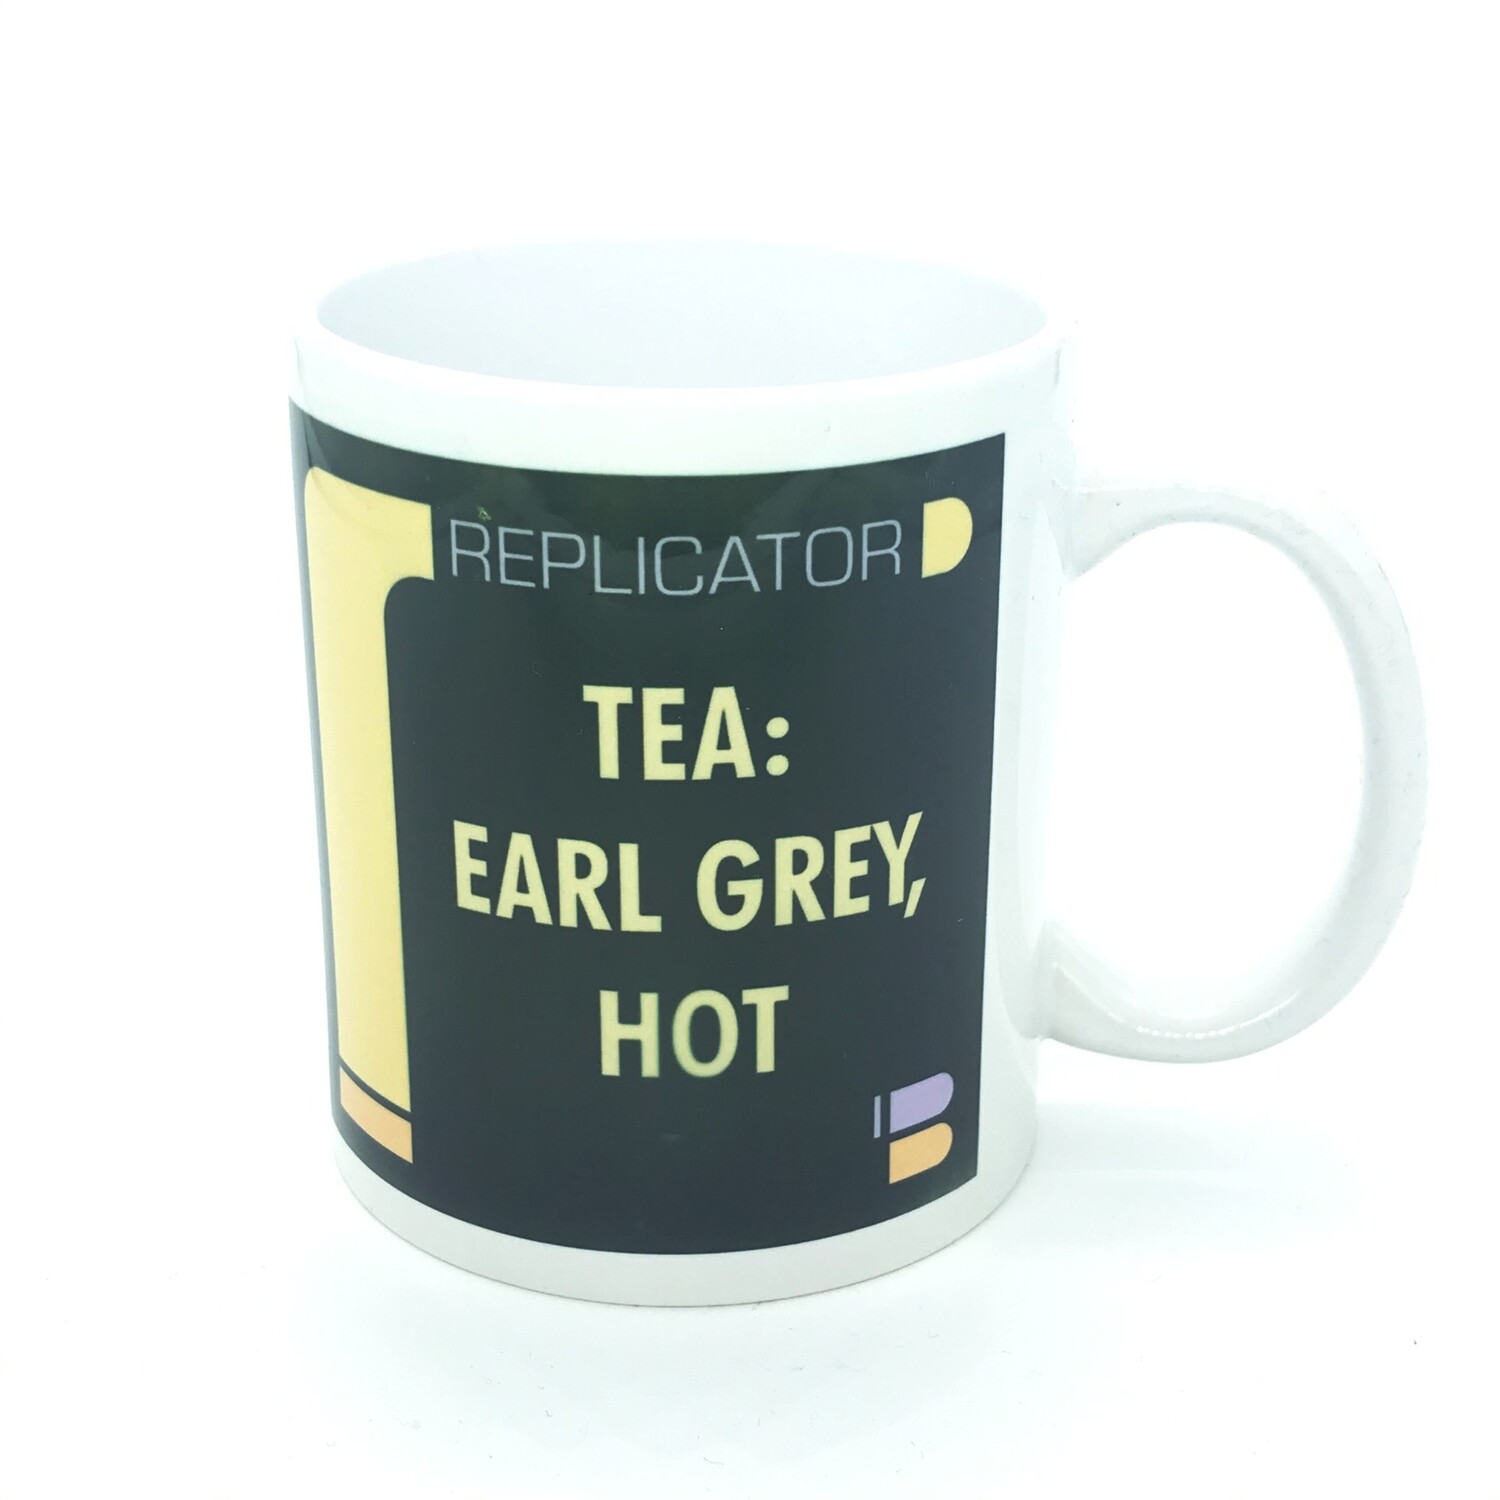 Coffee mug - Tea: Earl Grey, Hot